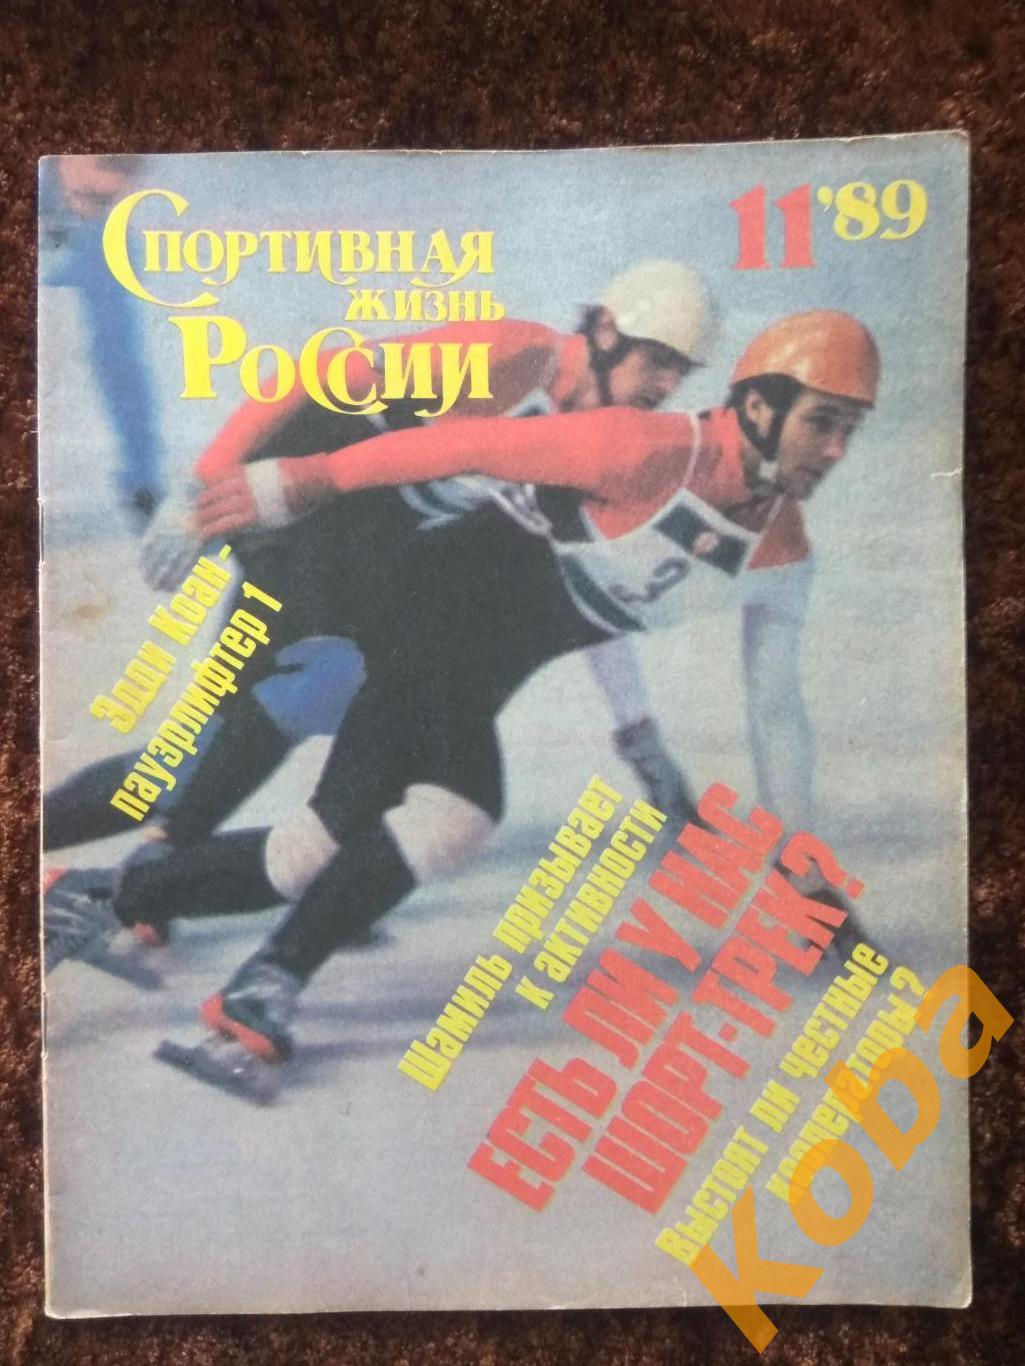 Борьба Тяжёлая атлетика Вяльбе Шорт трек Велобол Спортивная жизнь России 1989 11